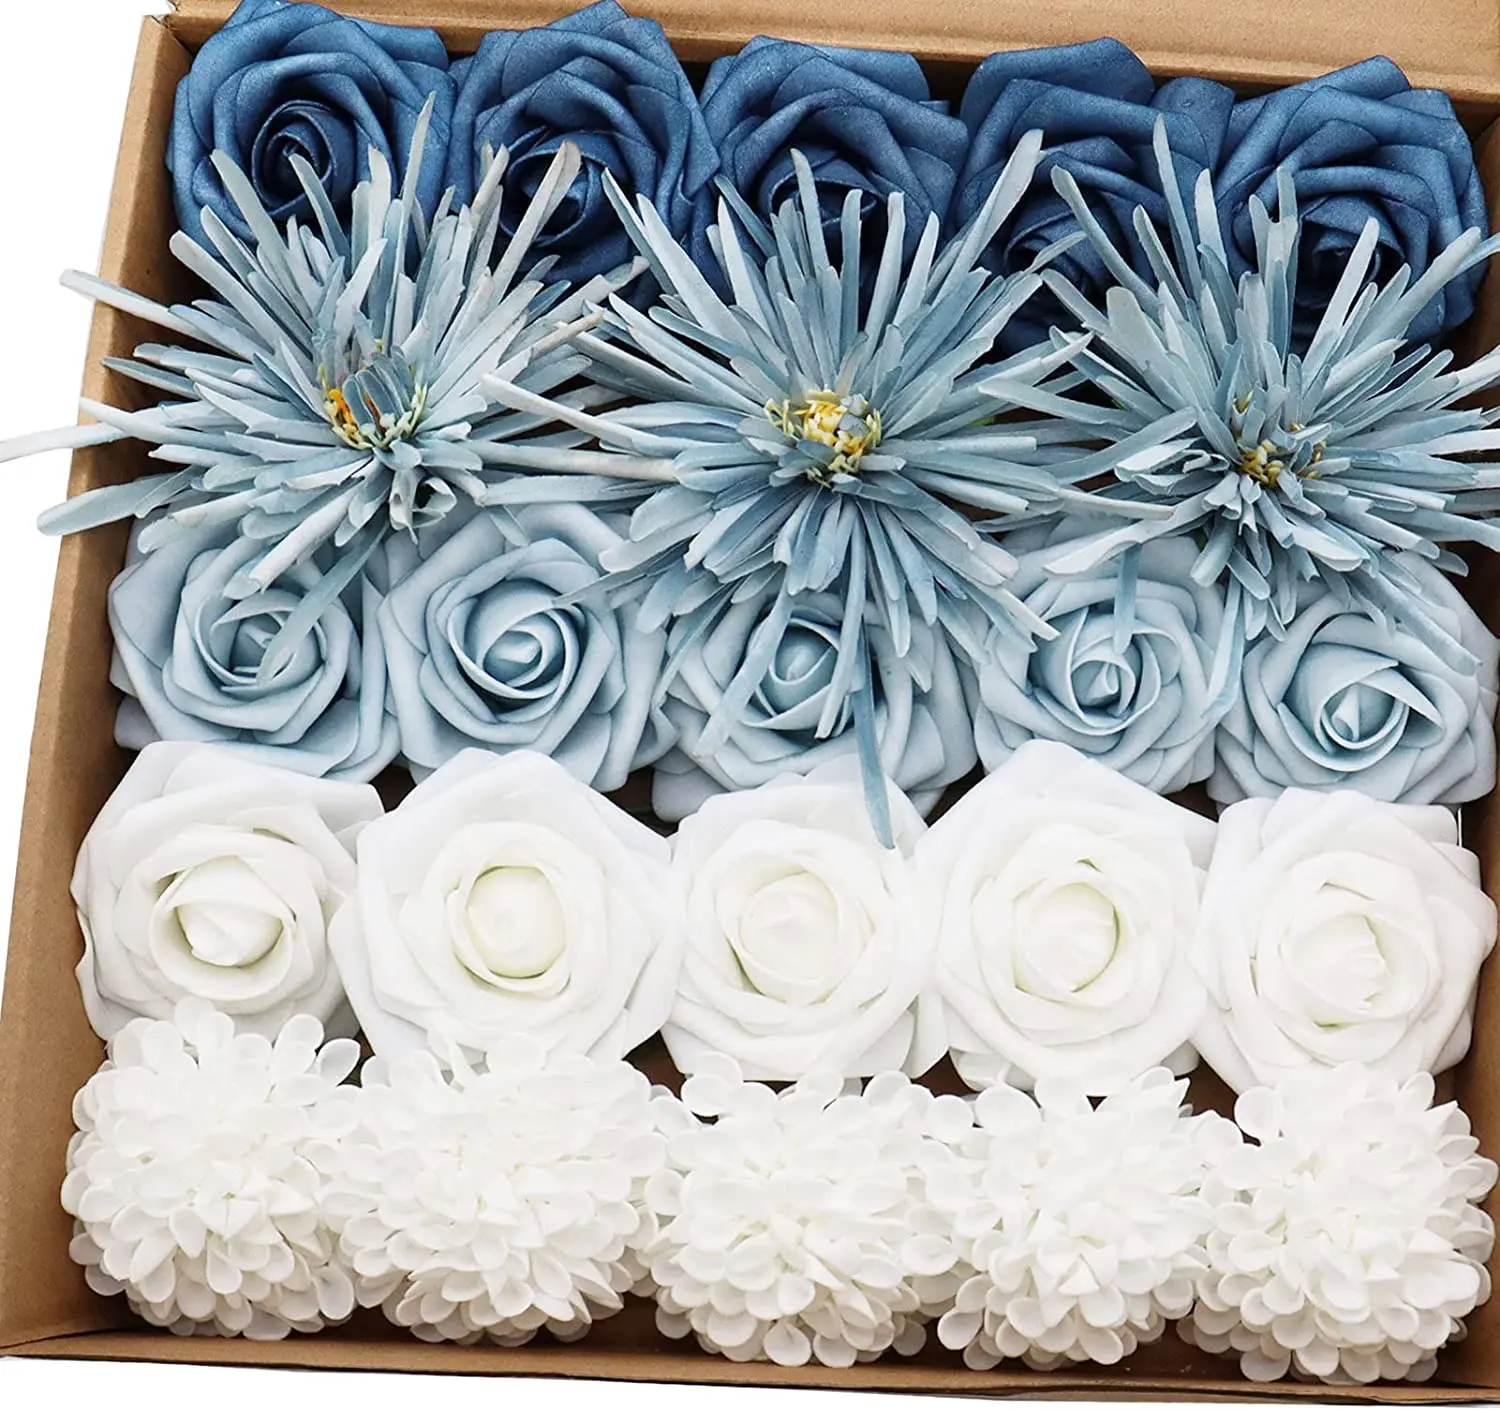 

Mefier Home Artificial Flowers Dusty Blue Flowers Combo Wedding Flowers for DIY Bouquets Centerpieces Floral Arrangements